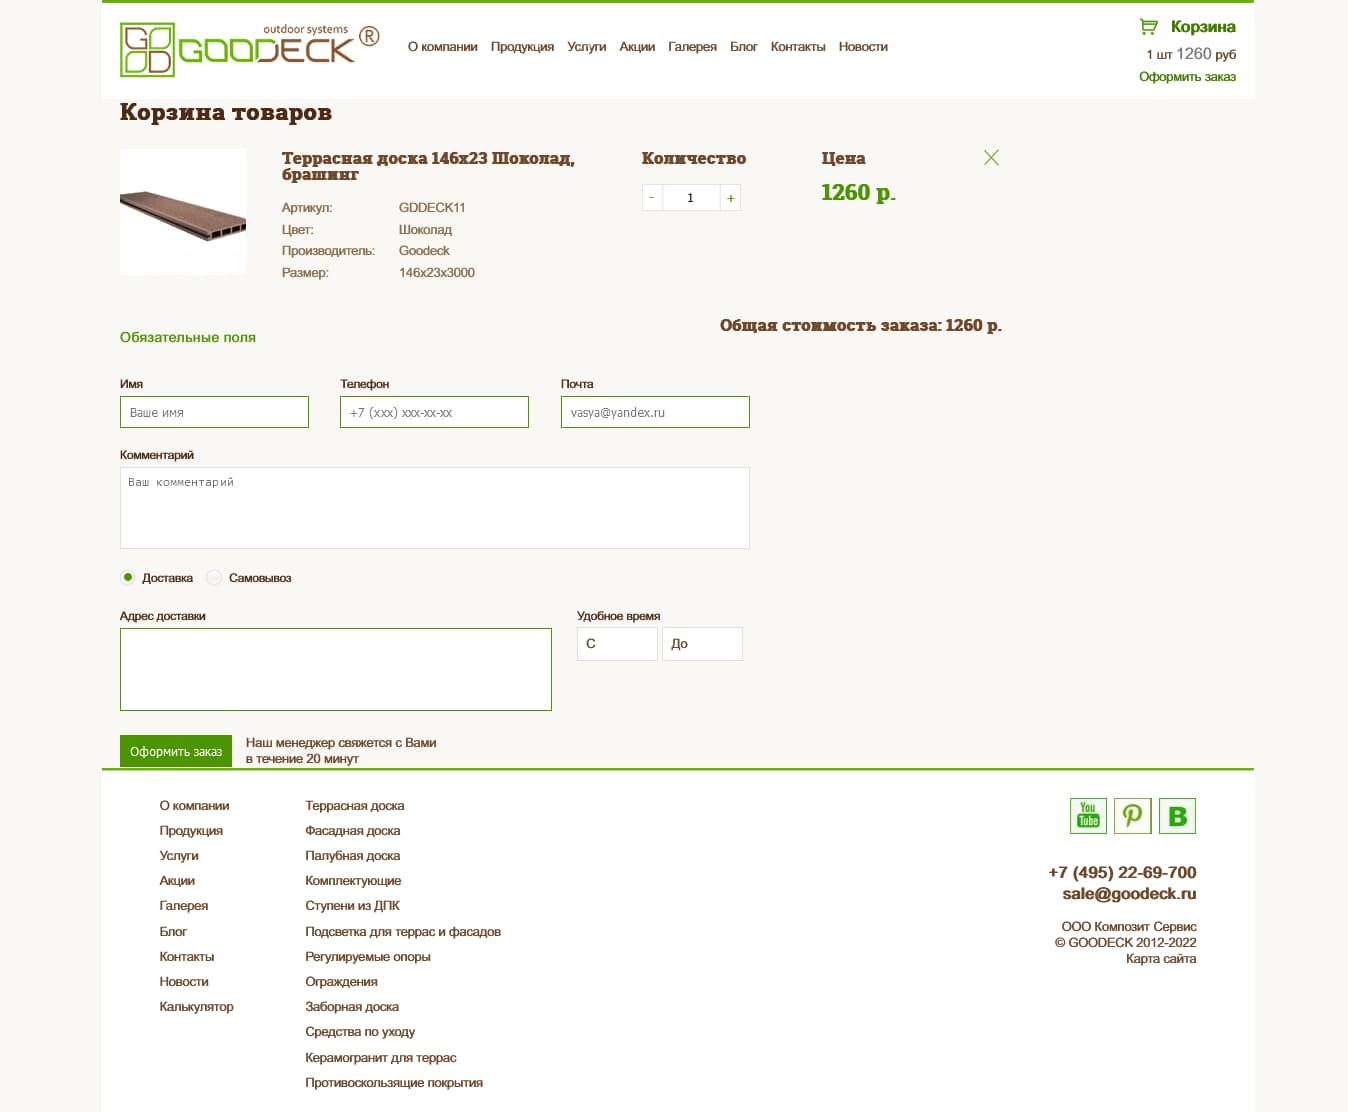 Разработка и техническая поддержка интернет магазина террасной доски из древесно-полимерного композита Goodeck.ru